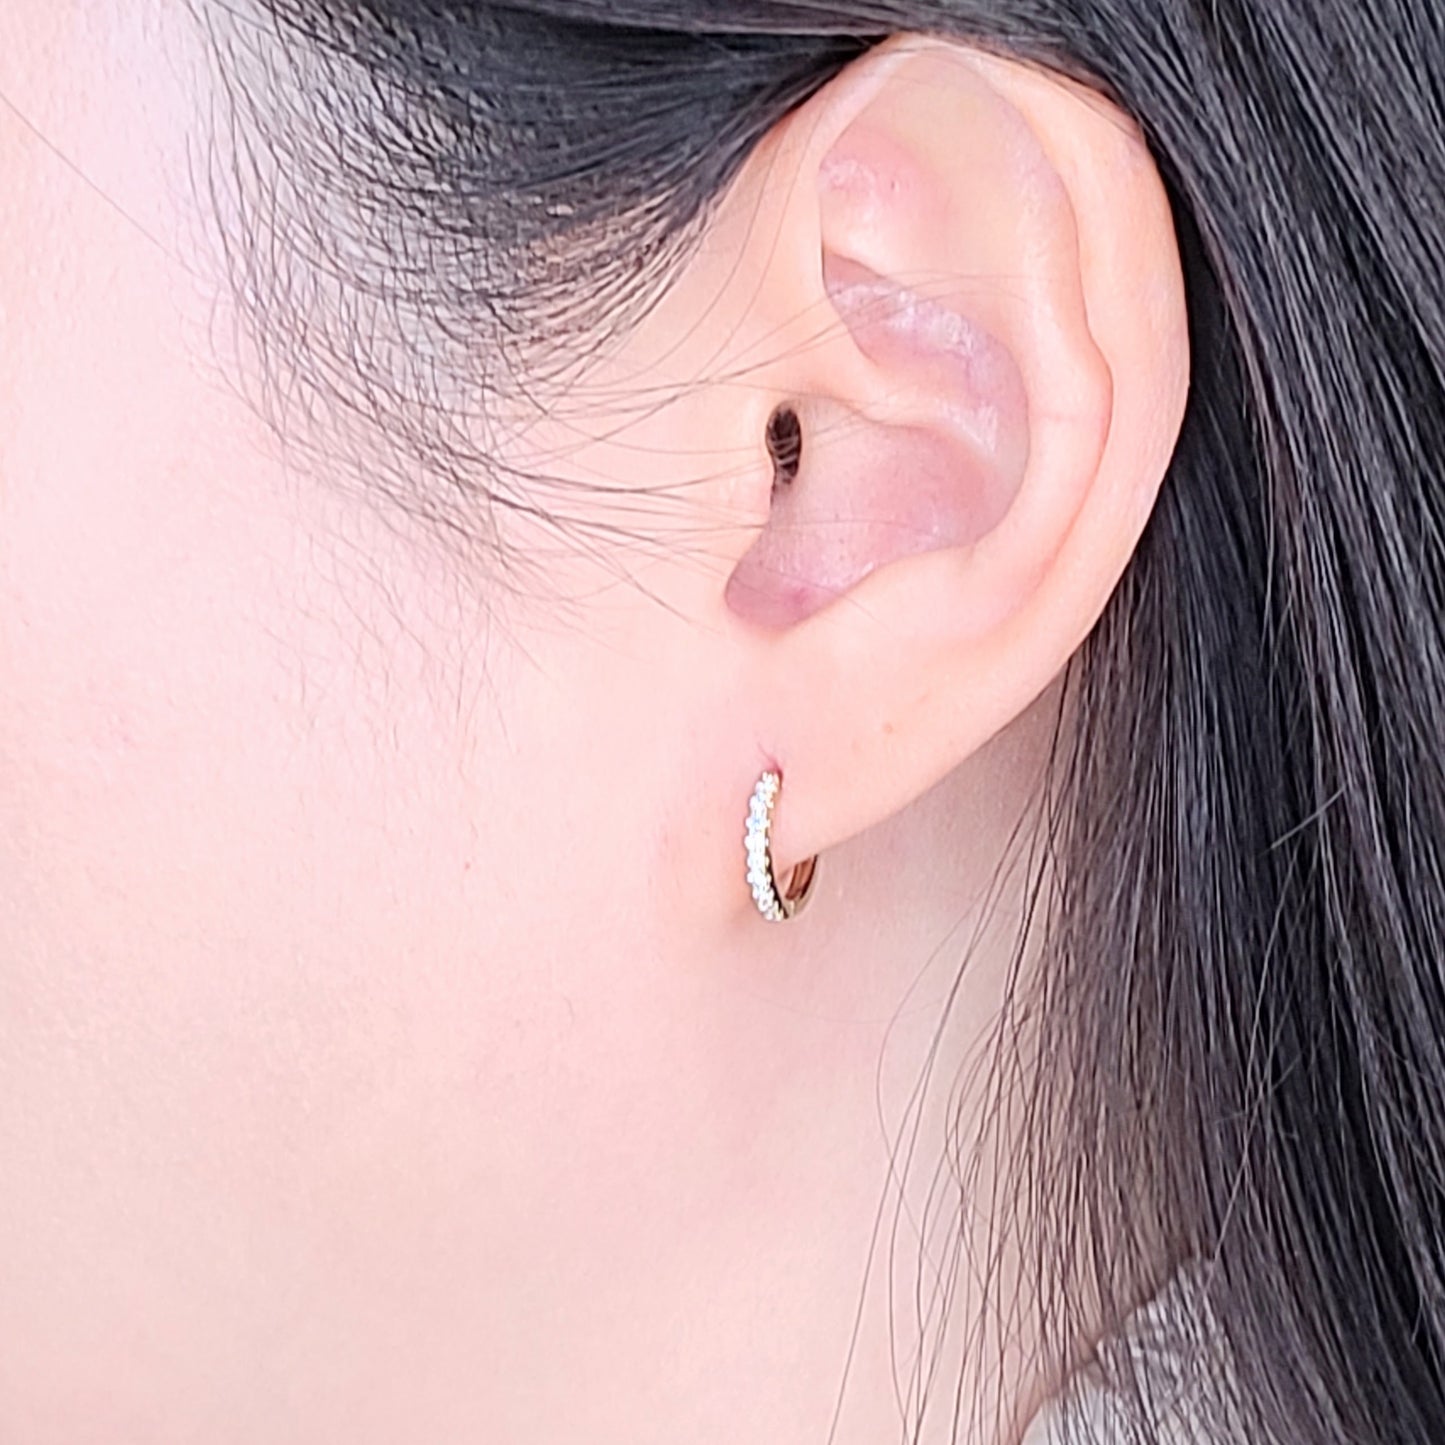 11mm Diameter Hoop Earrings /Diamond Huggie Earrings / Diamond Hoop Earrings/ Handmade Diamond Earrings/ Mini Hoop Earrings / Single or Pair